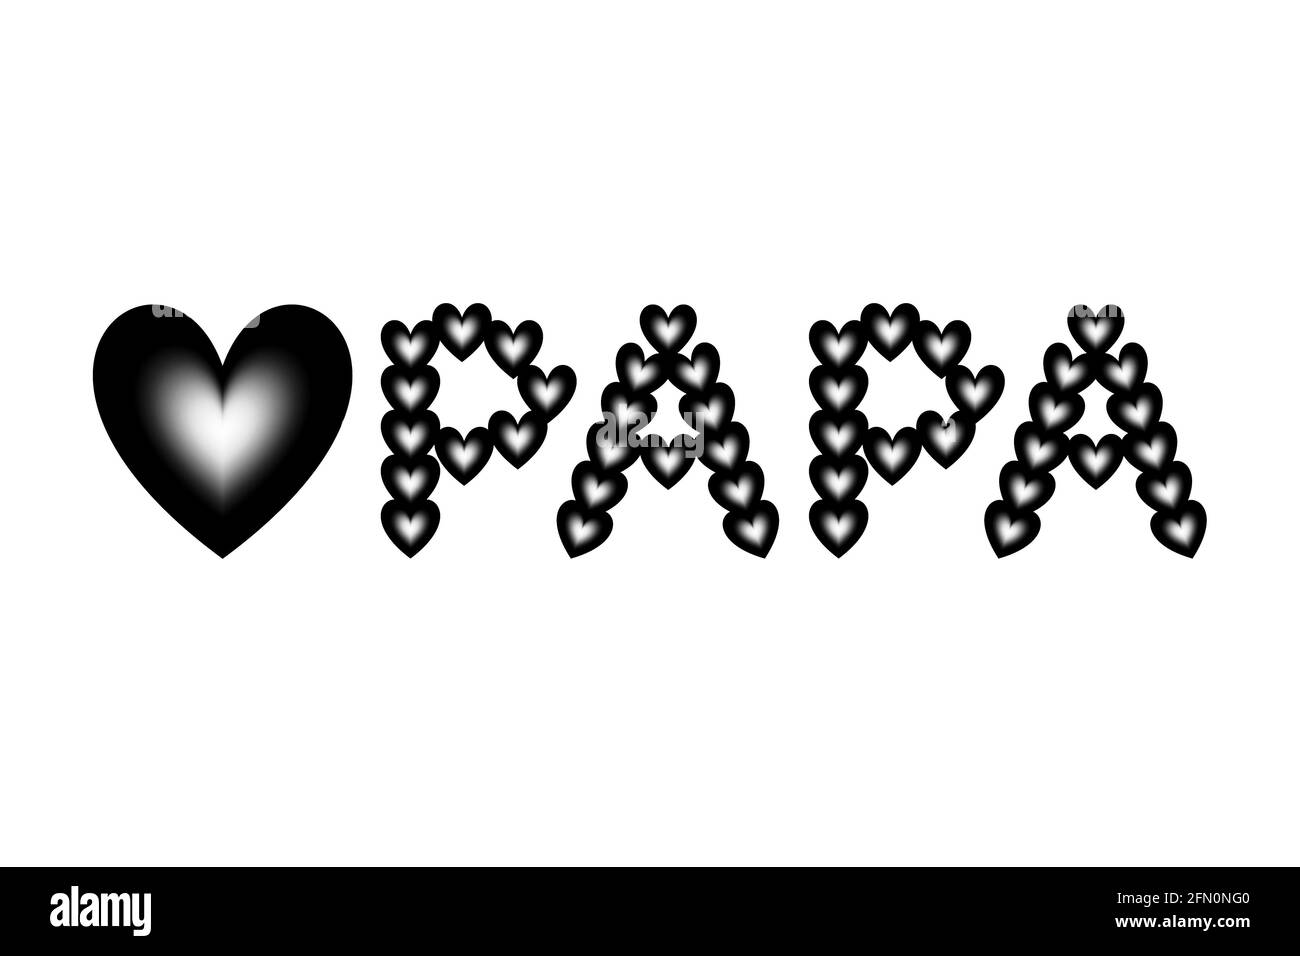 Farbverlauf von schwarzen und weißen Herzformen sind in das Liebessymbol und das Wort „PAPA“ eingeordnet. Stockfoto